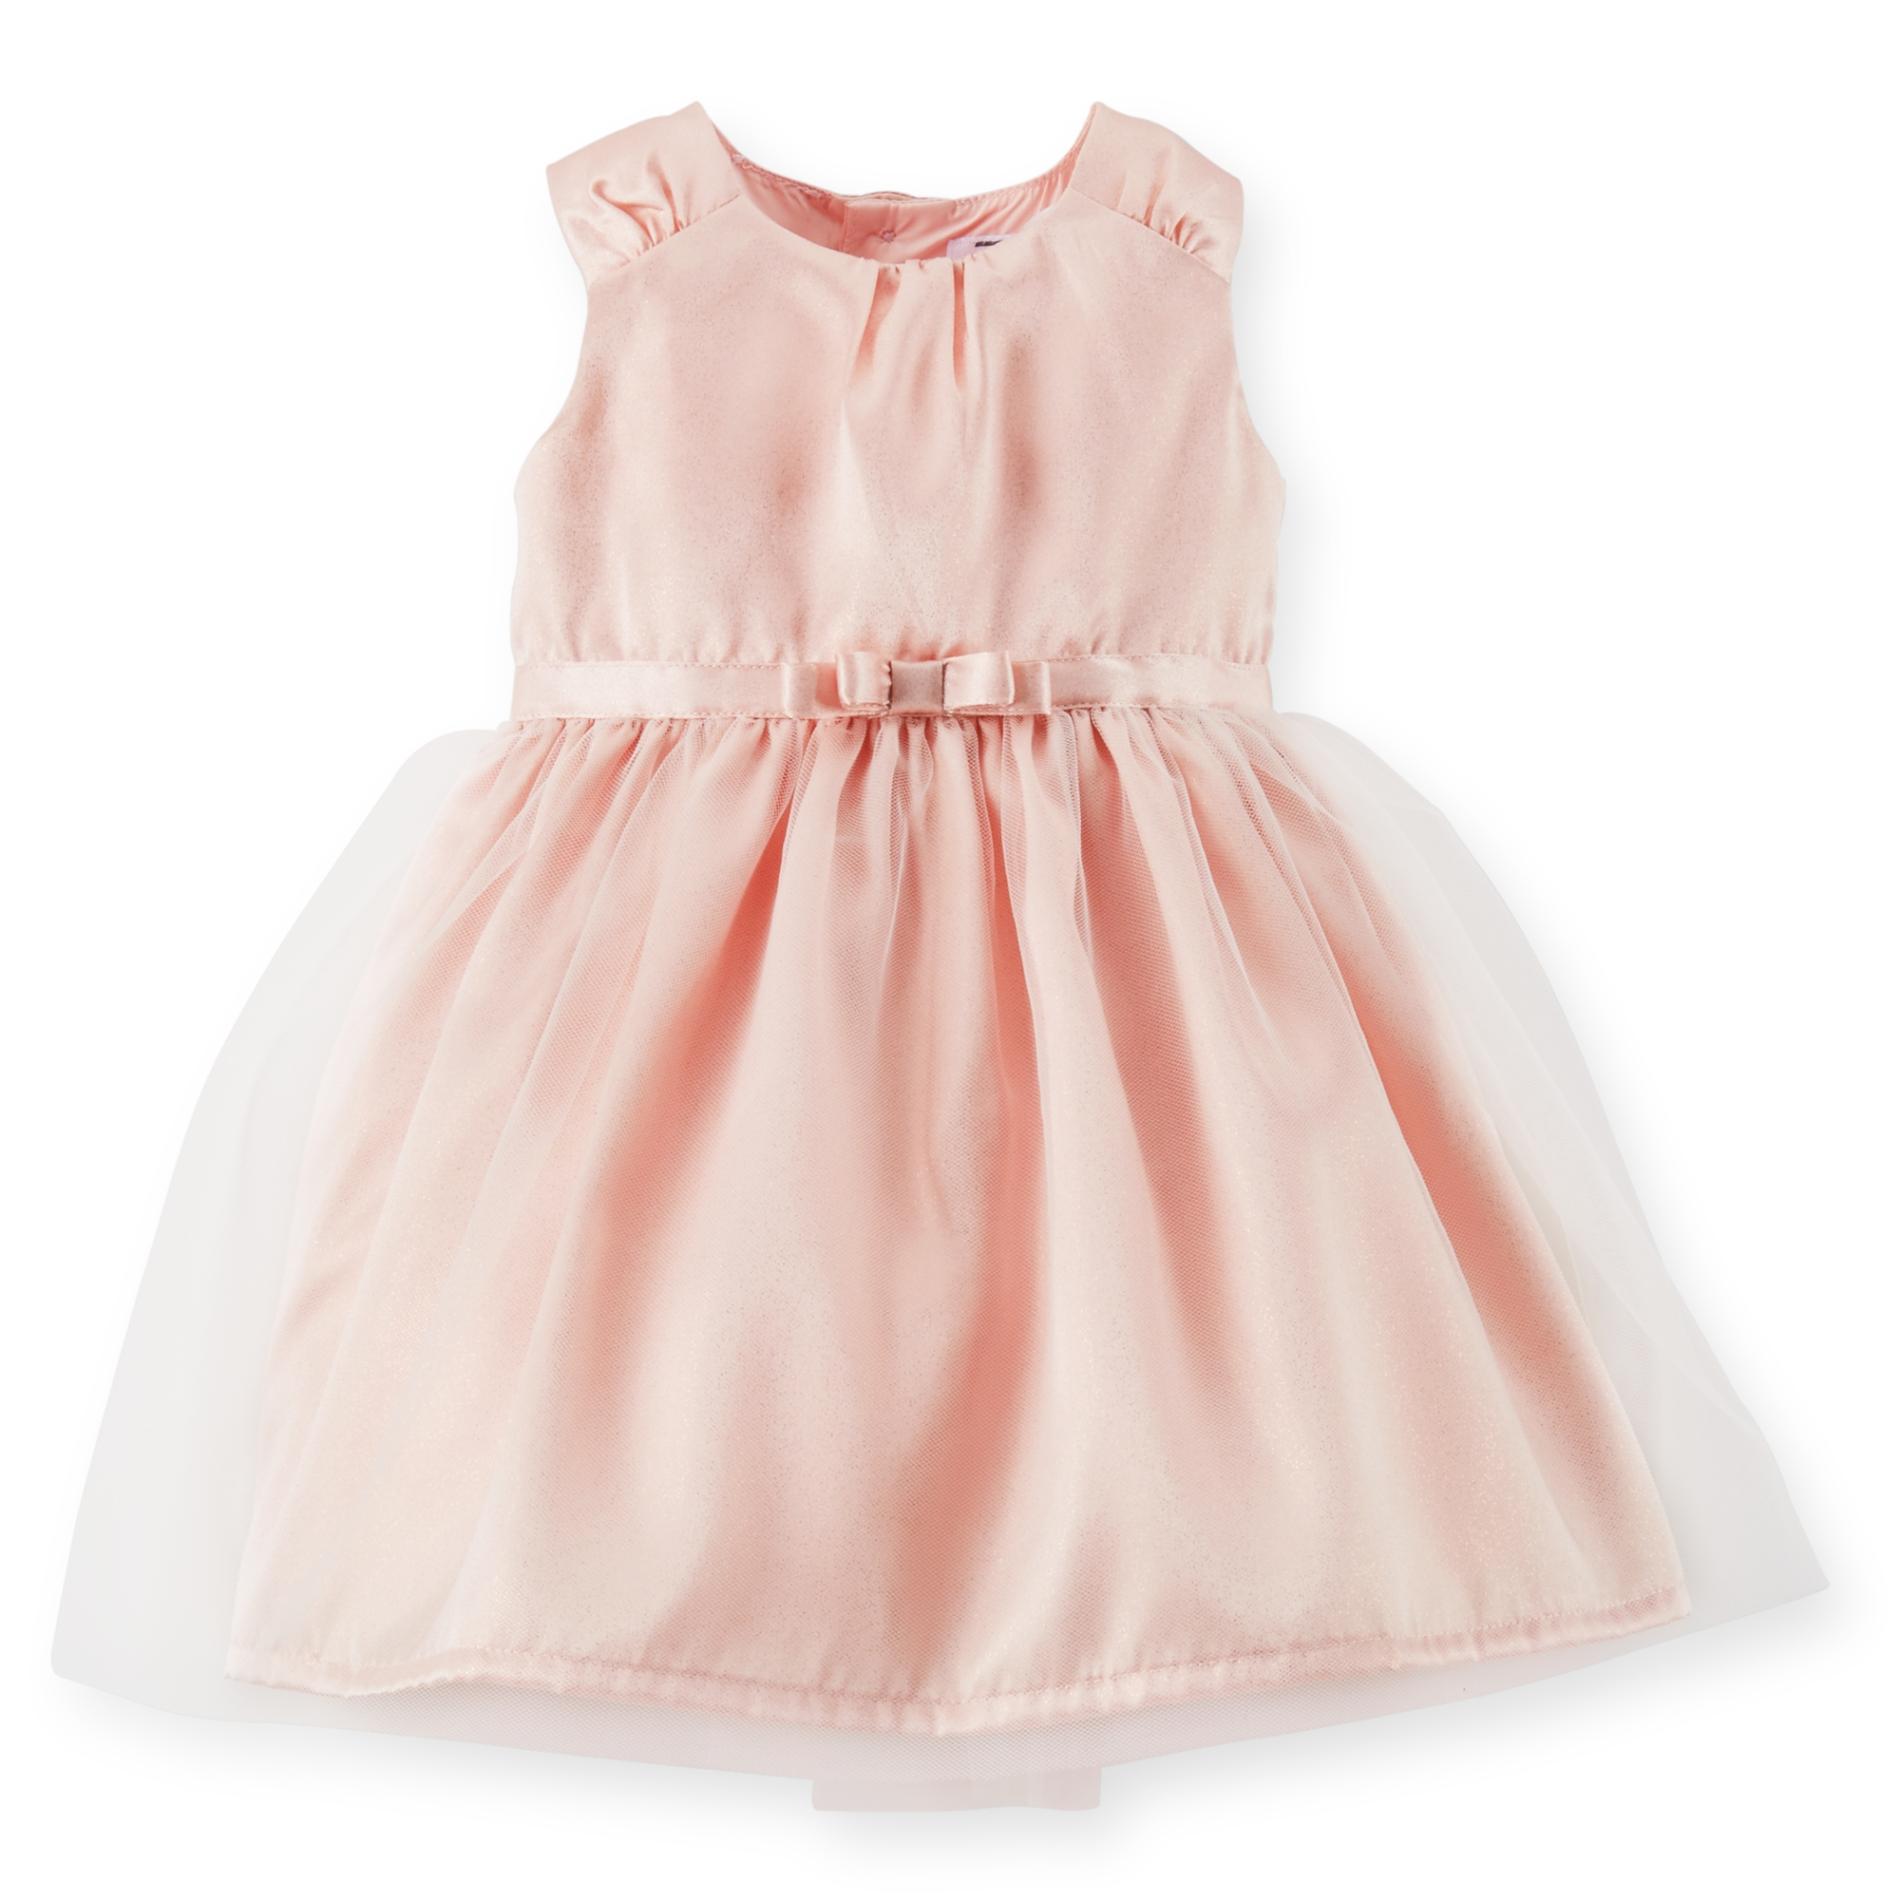 Carter's Newborn & Infant Girl's Sleeveless Satin Dress